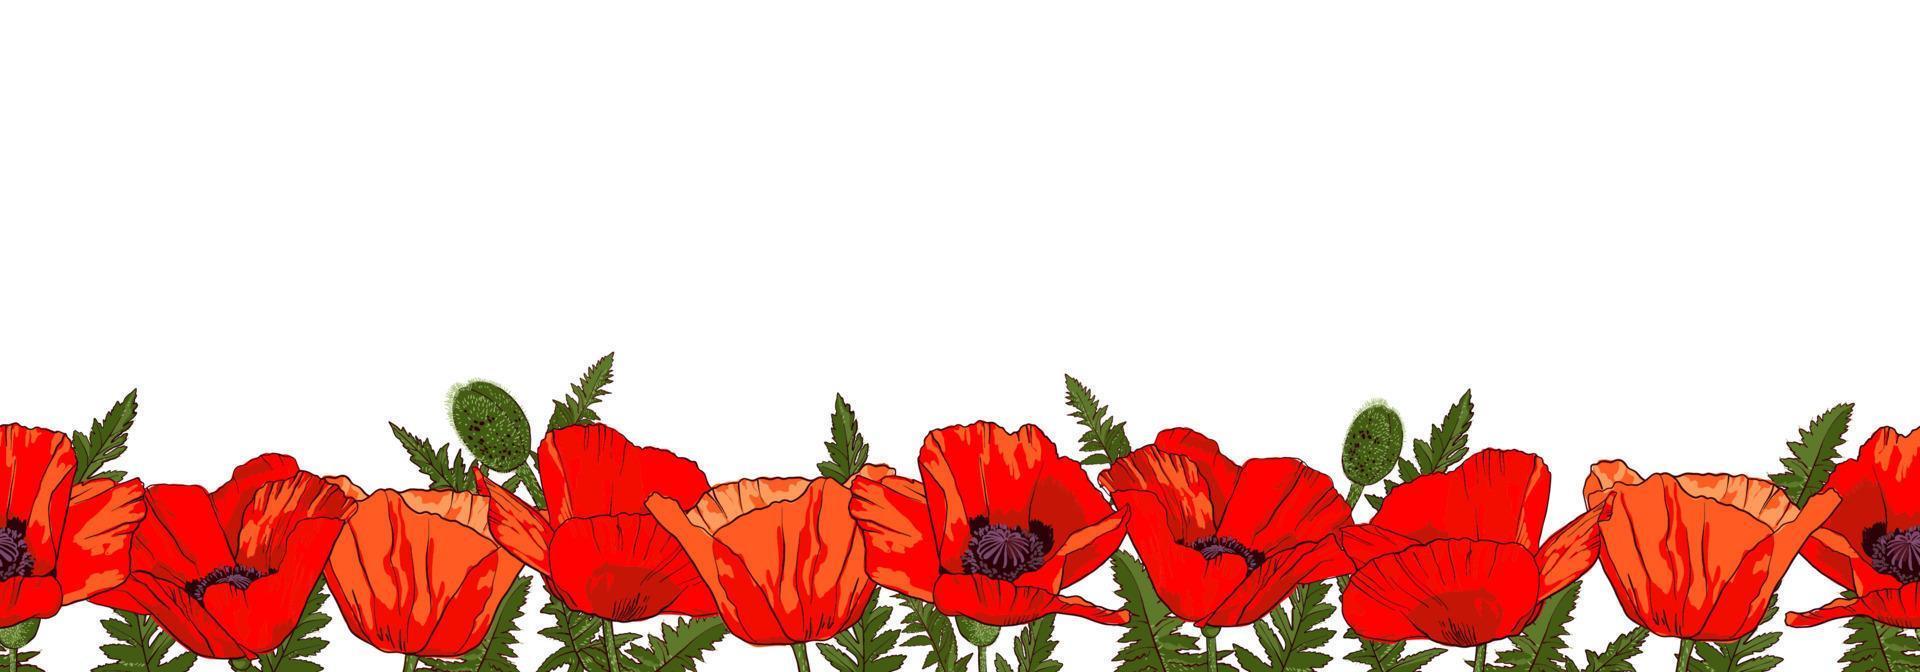 borda sem costura horizontal com flores de papoula vermelhas desenhadas à mão, isoladas no fundo branco. ilustração vetorial. vetor